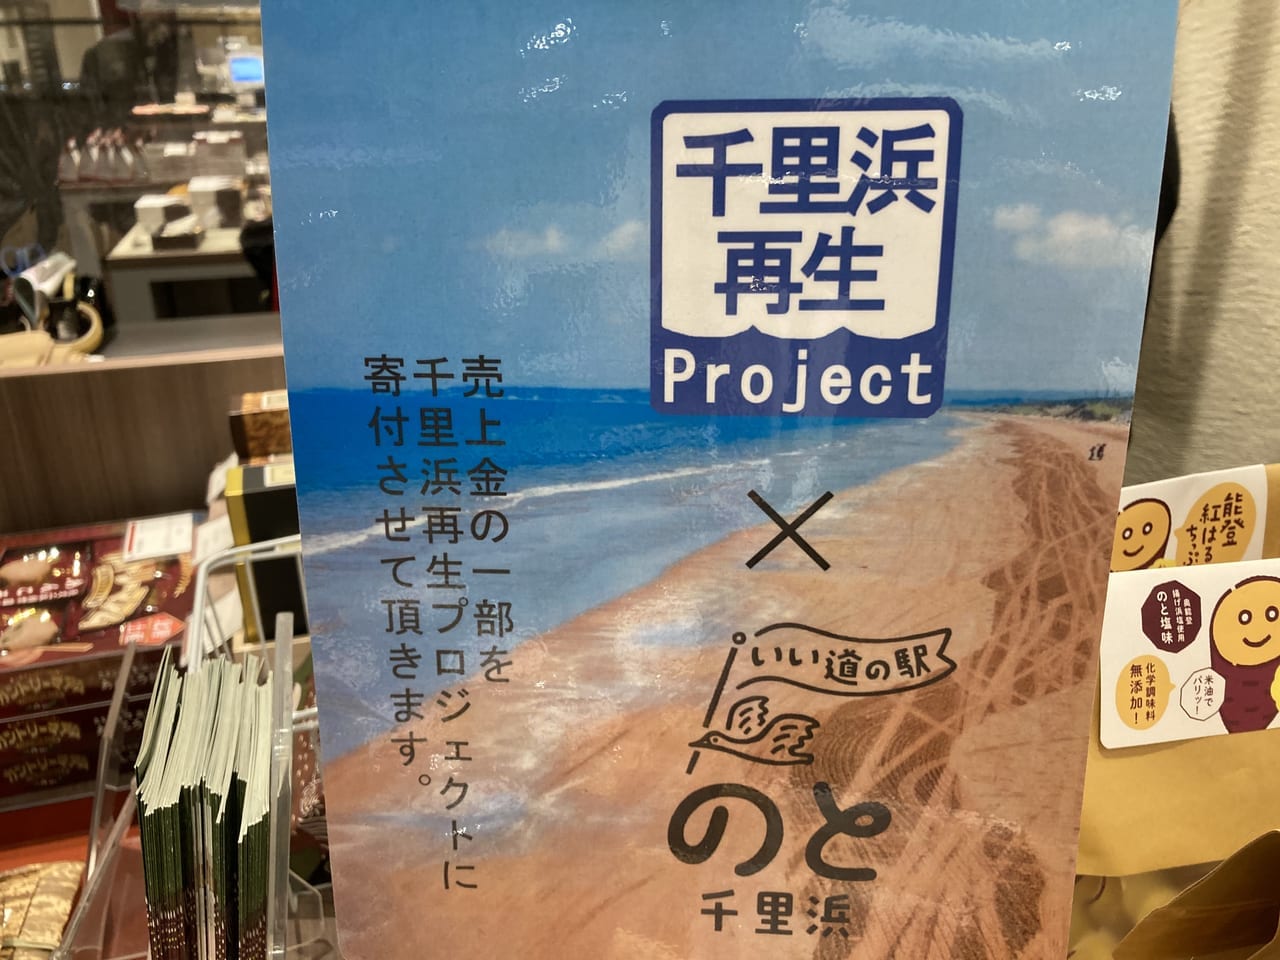 千里浜再生プロジェクト